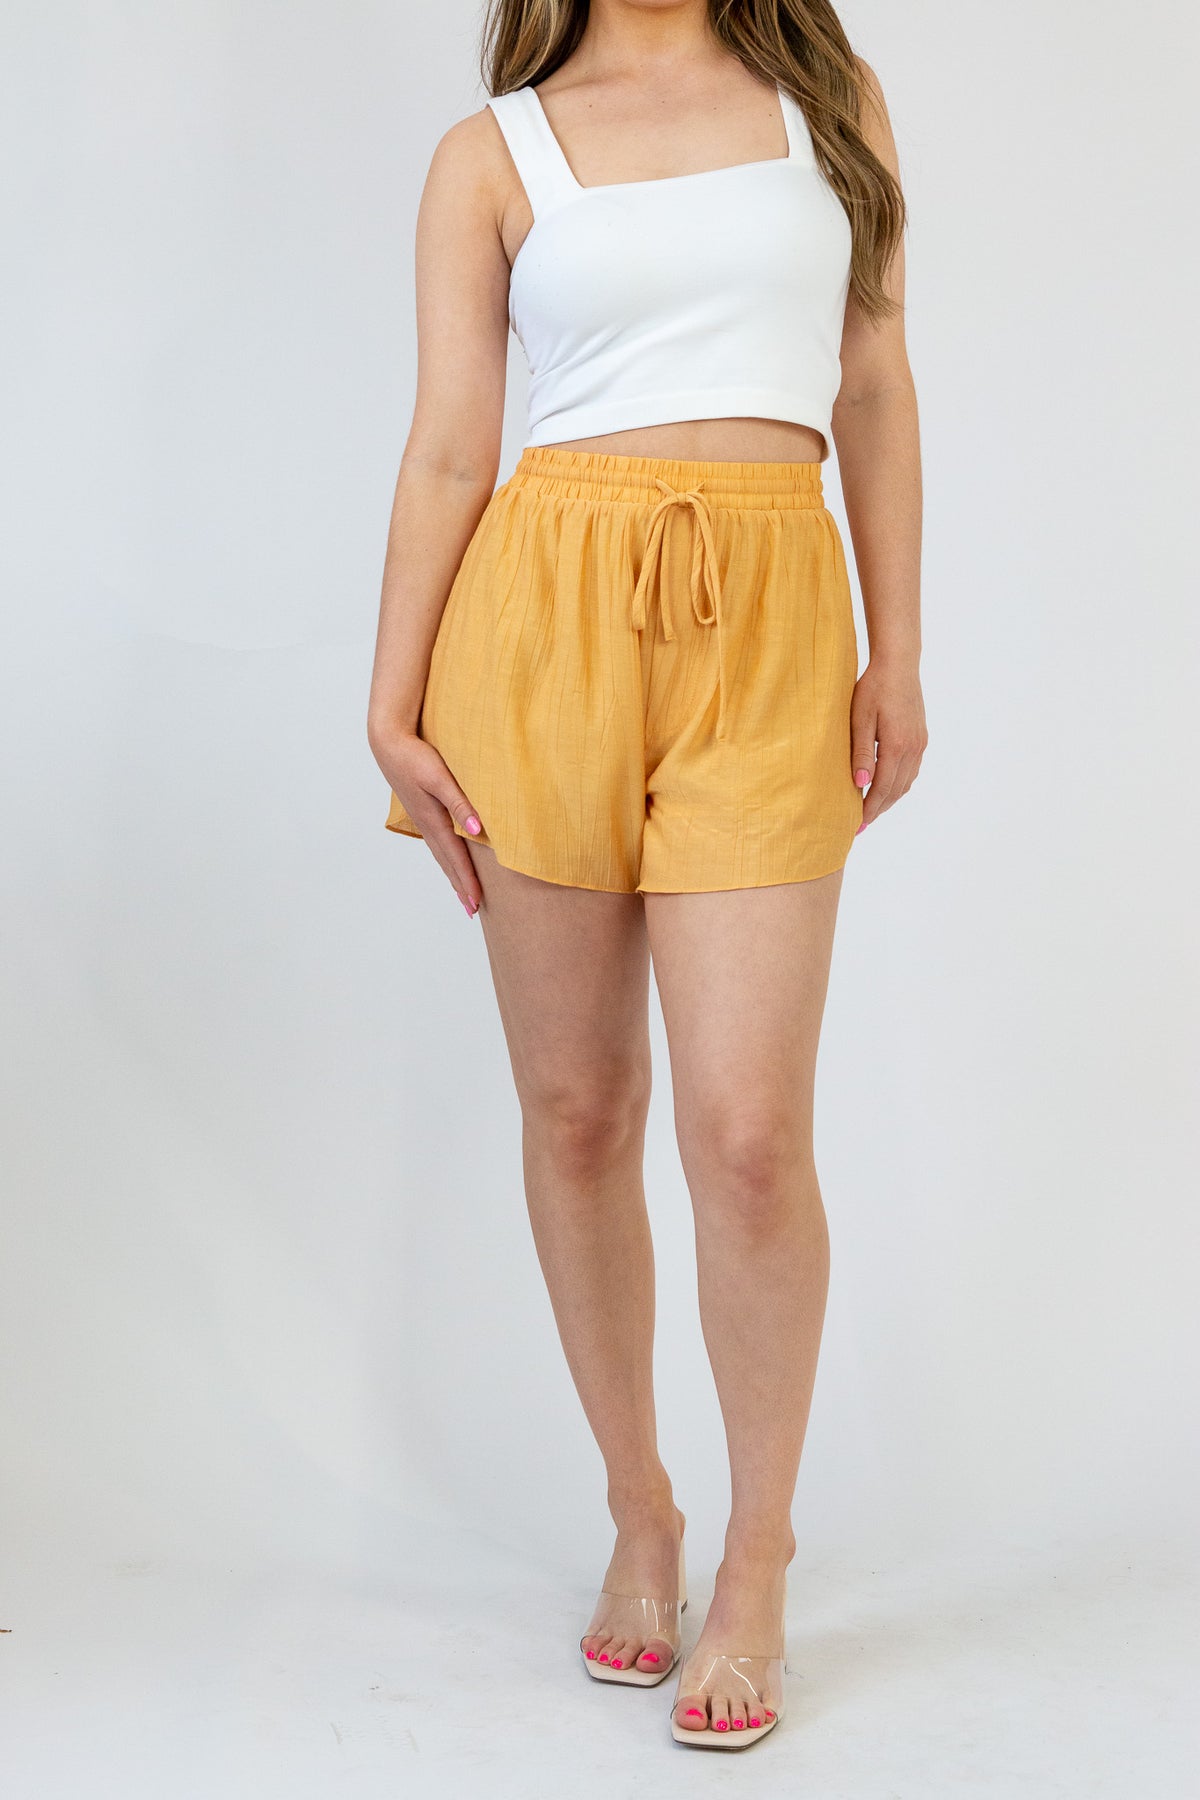 Clementine Crush Shorts